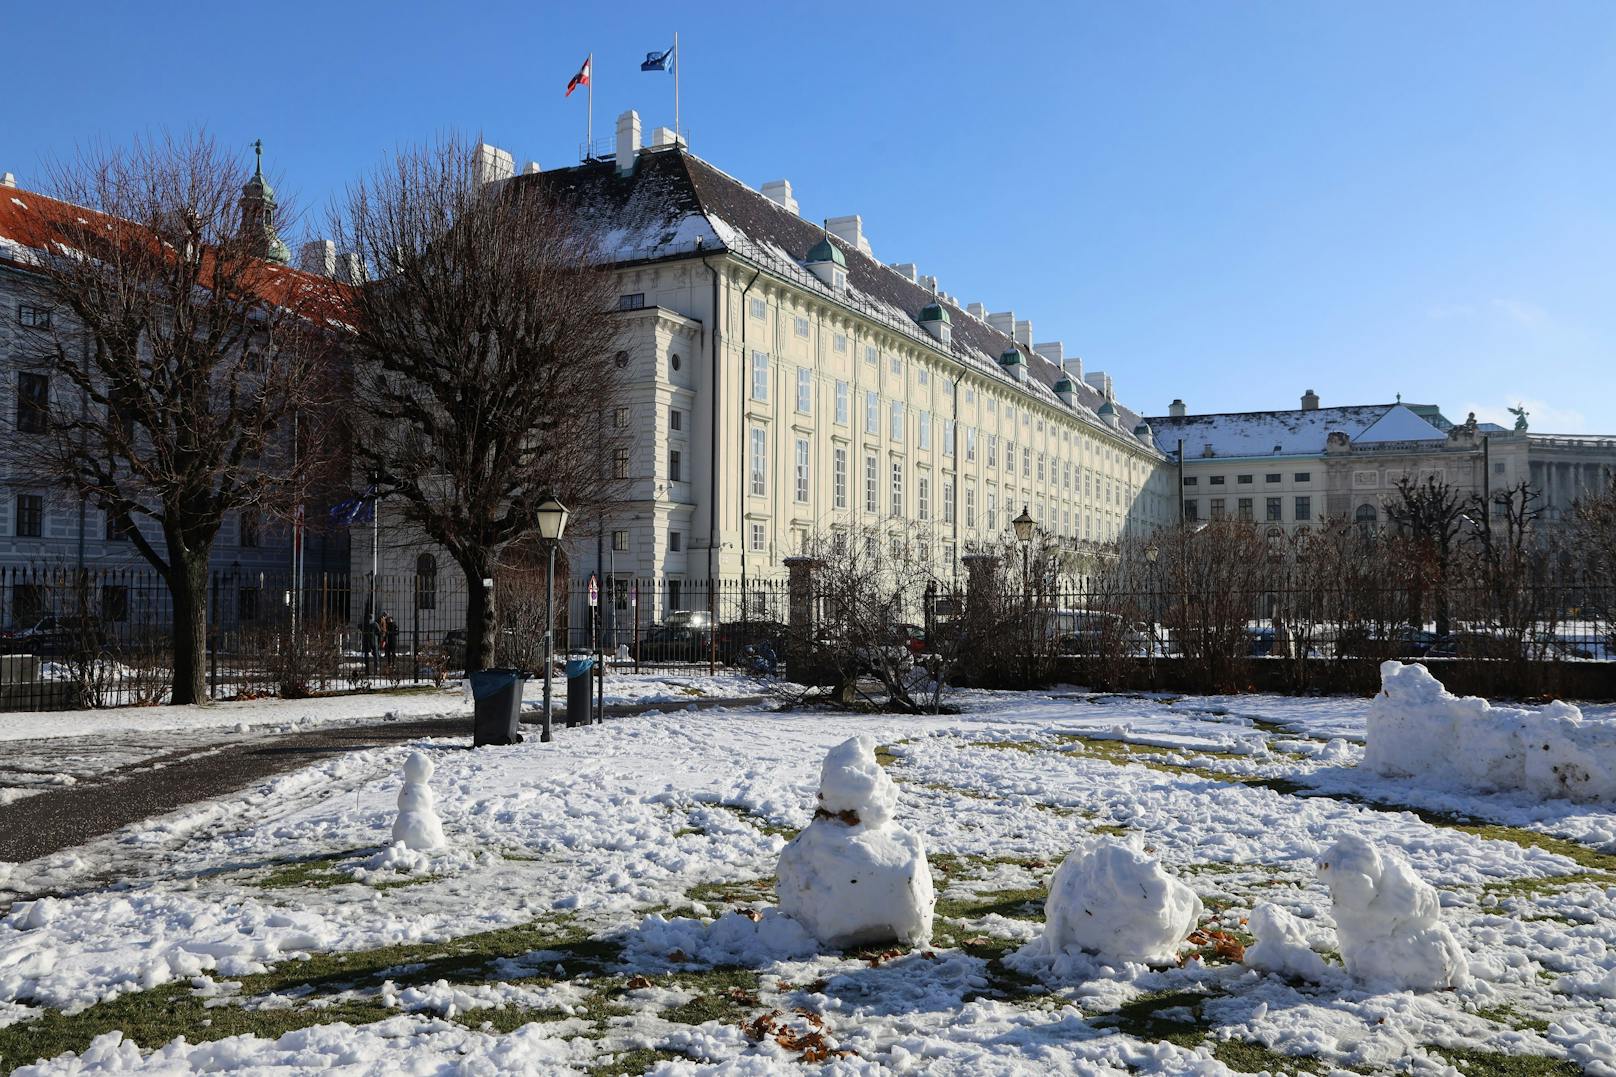 Wien mit Schnee am 10. Dezember 2021. Bald schneit es wieder etwas "bis in tiefste Lagen".